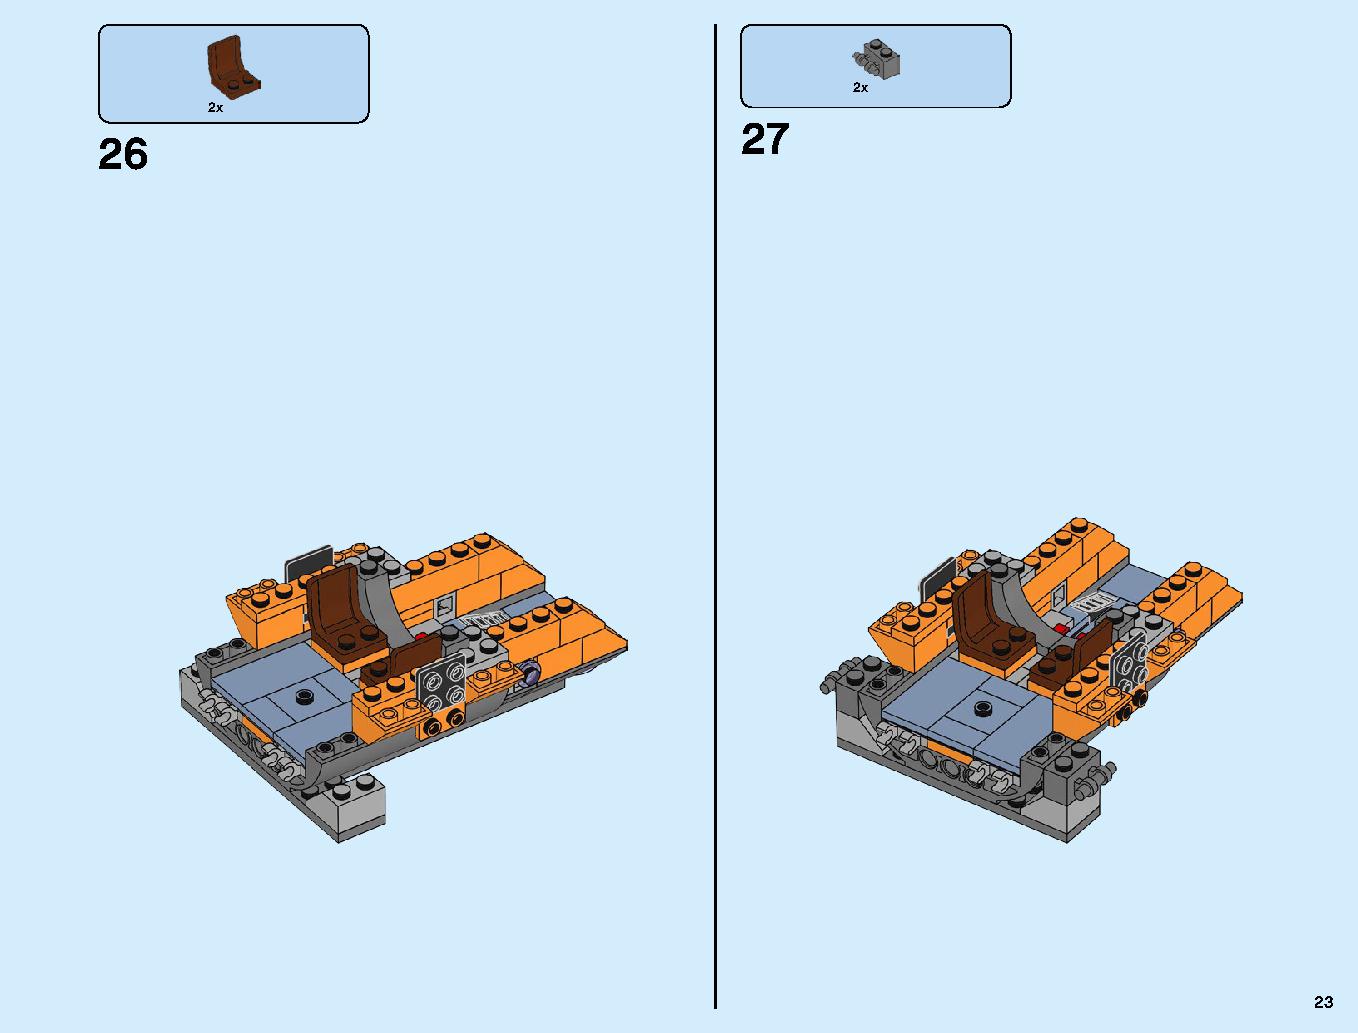 어벤져스 타노스: 최후의 전투 76107 레고 세트 제품정보 레고 조립설명서 23 page